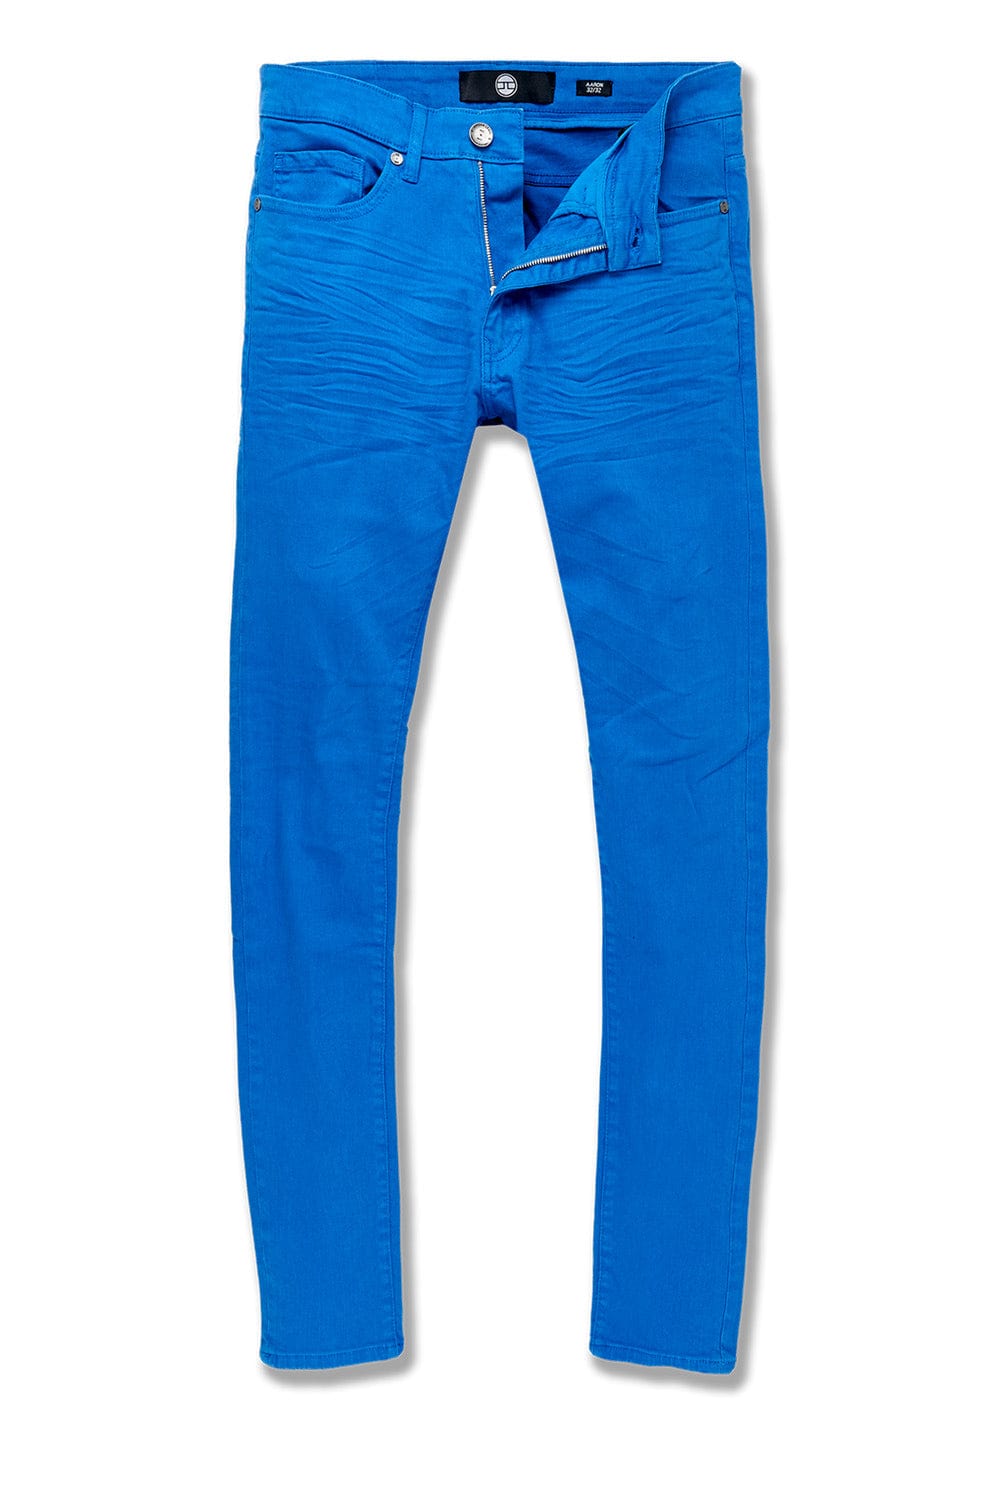 Jordan Craig Ross - Pure Tribeca Twill Pants (Exclusive Colors) Royal / 28/32